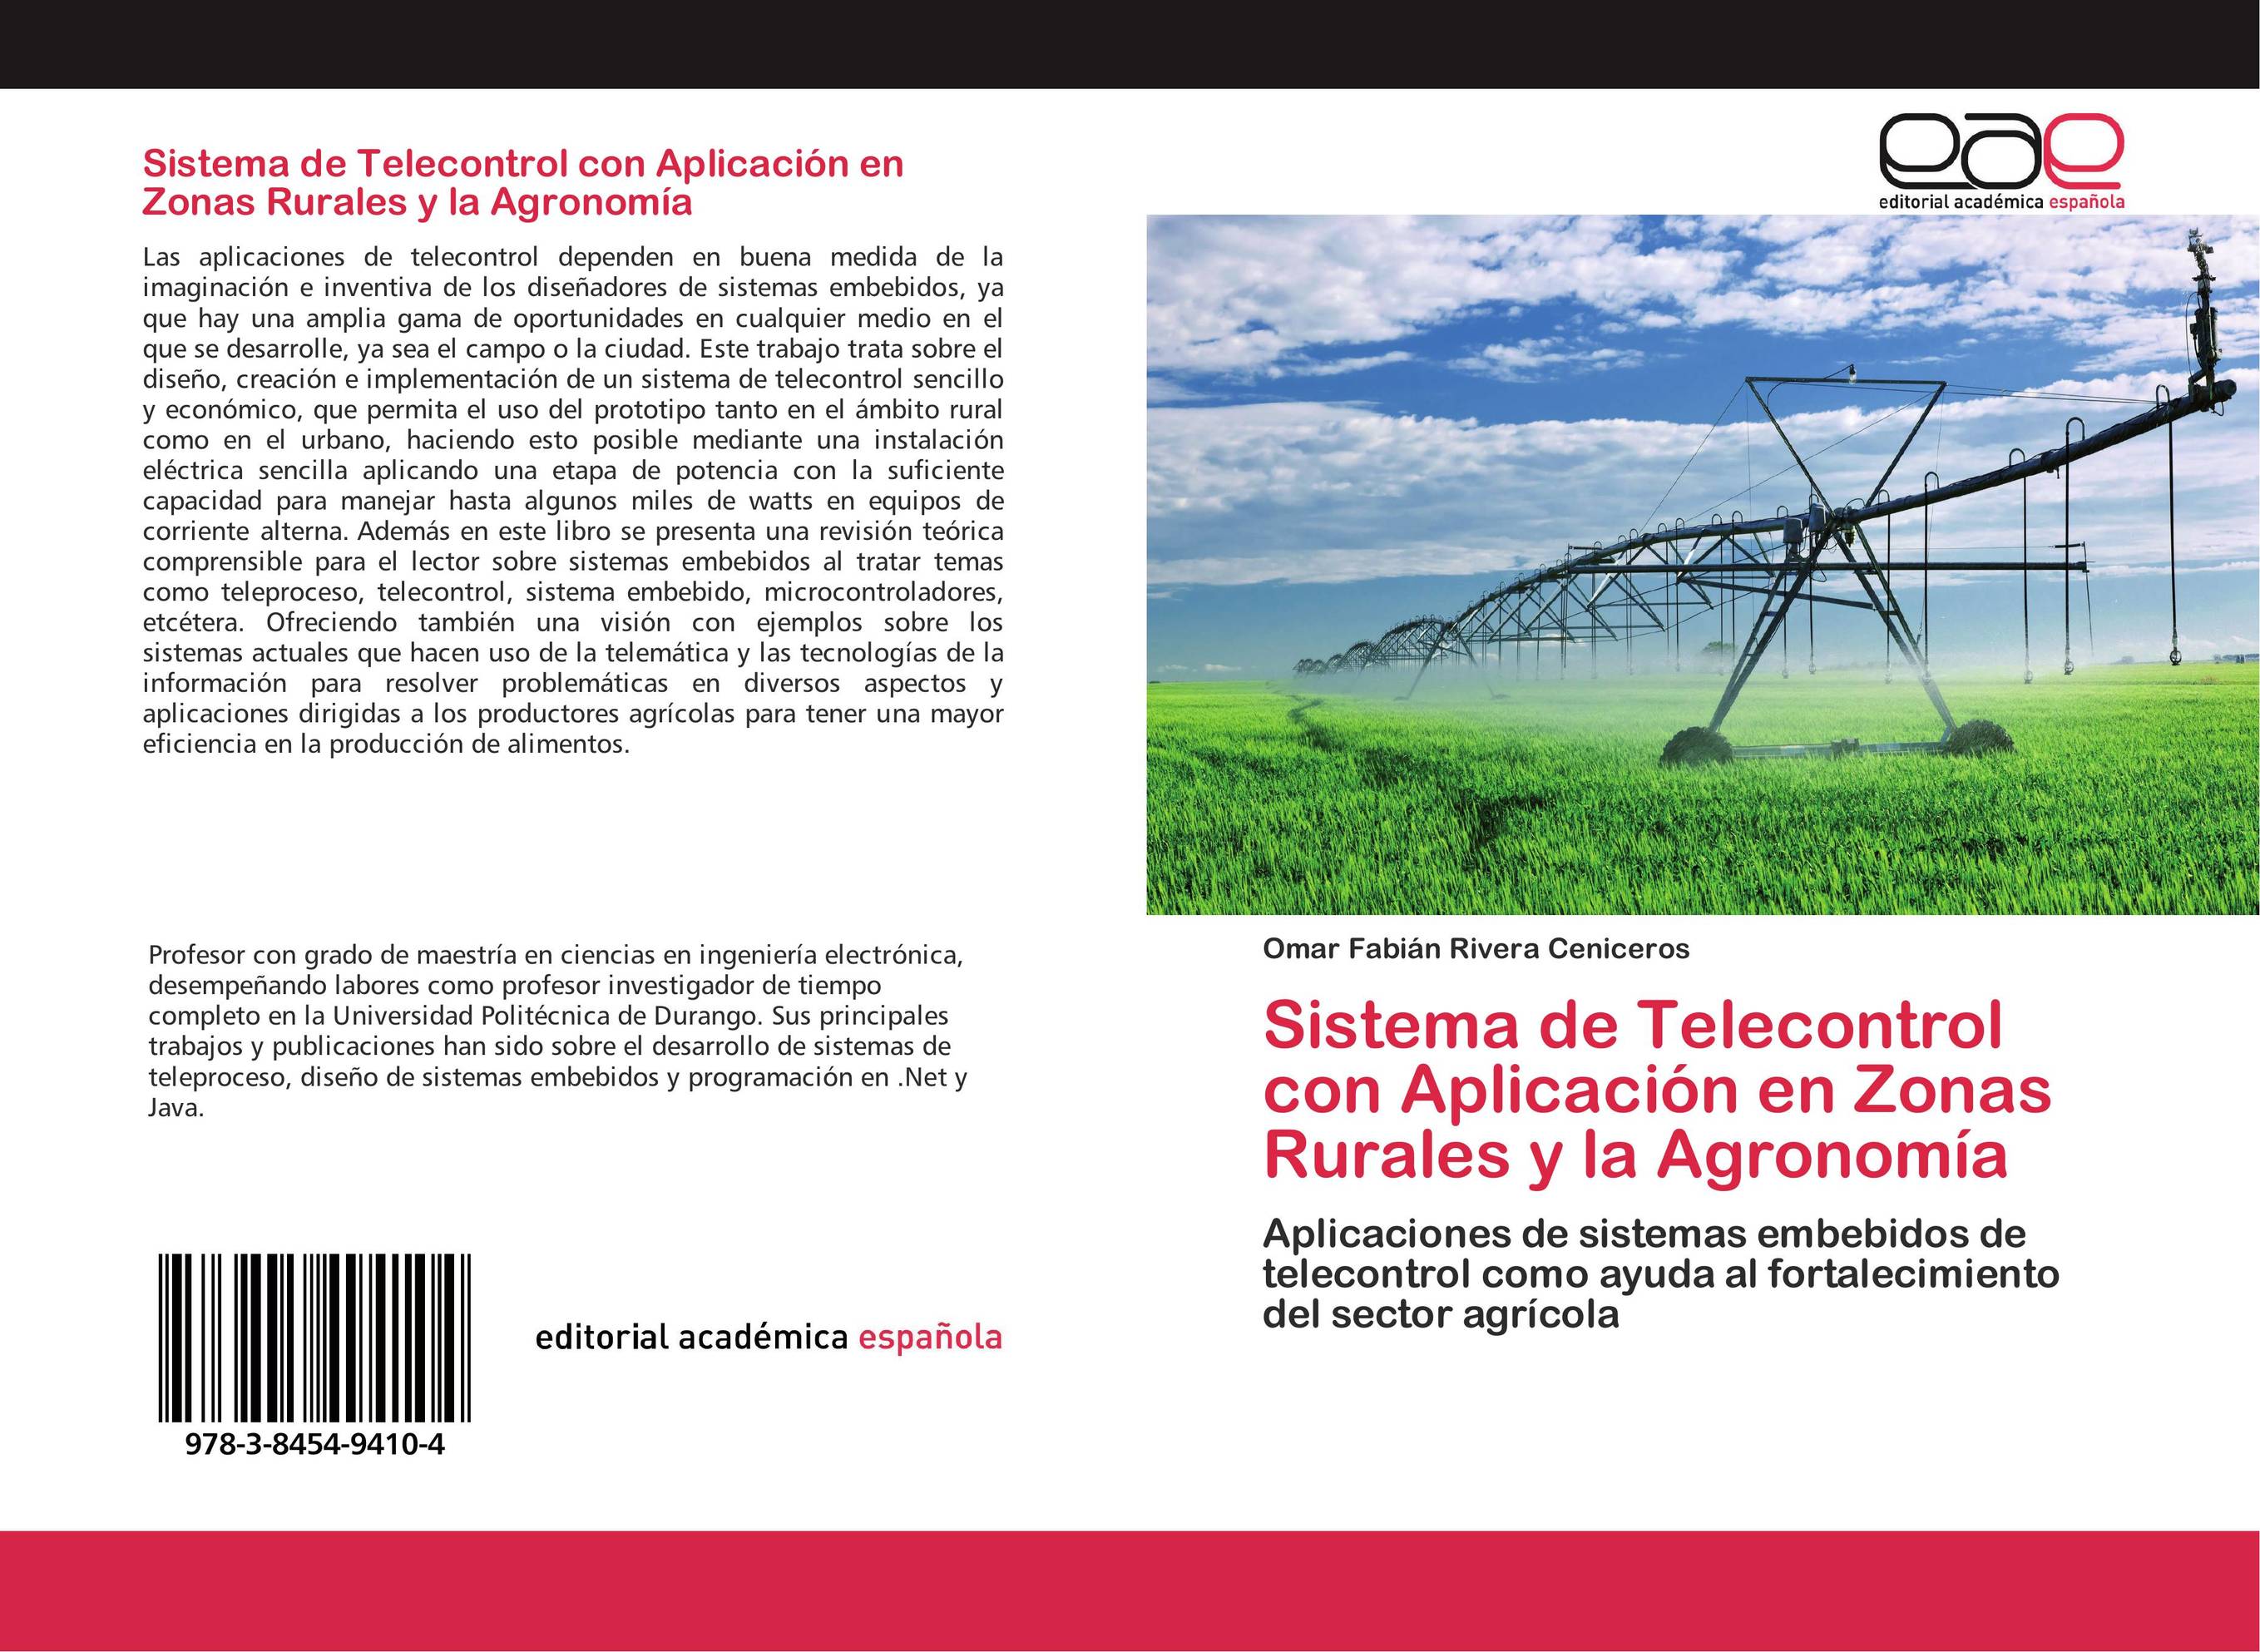 Sistema de Telecontrol con Aplicación en Zonas Rurales y la Agronomía